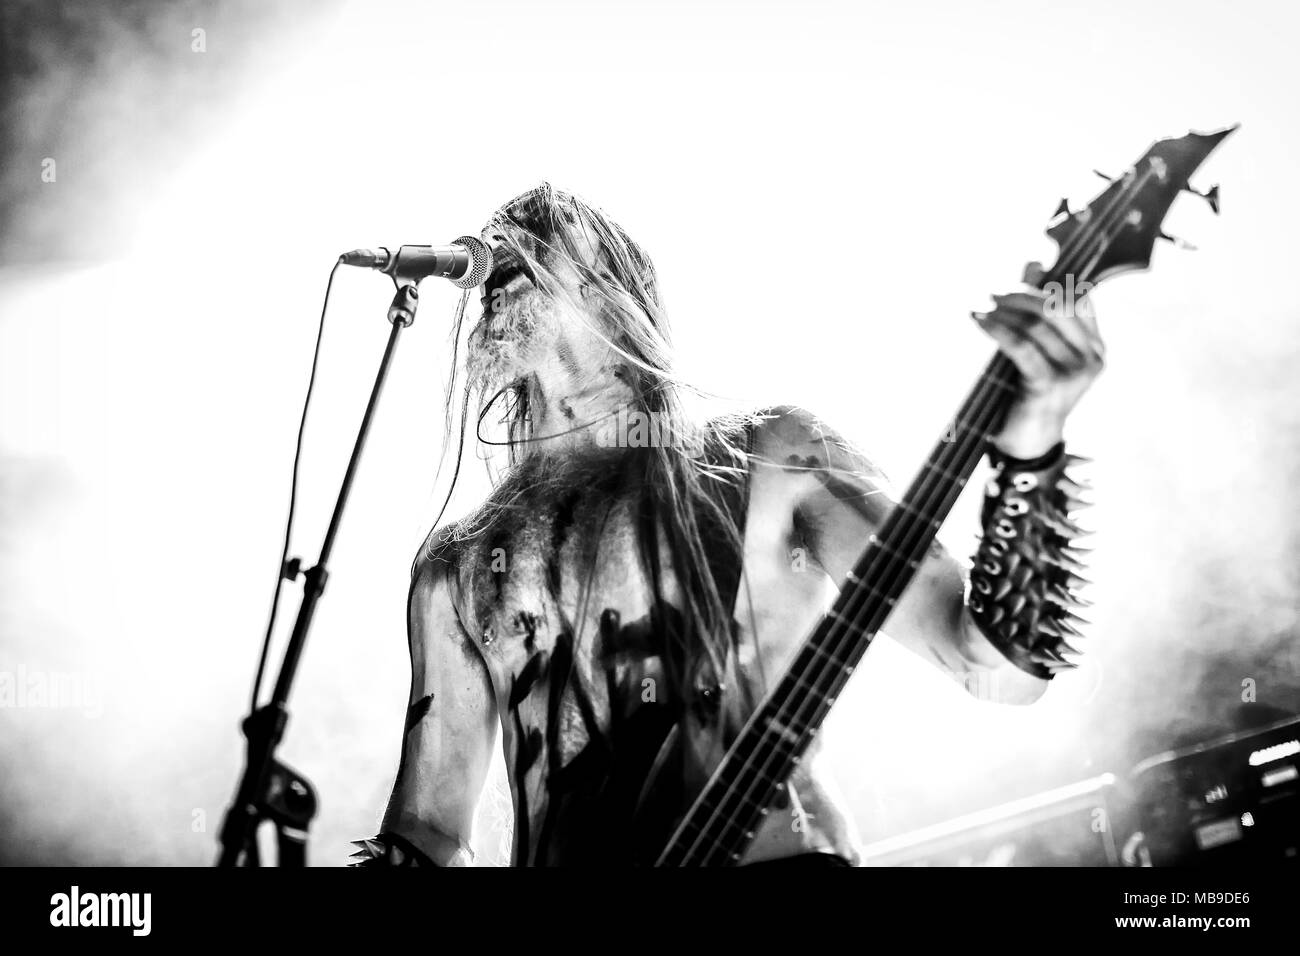 Norvège, Oslo - 1 avril 2018. Le groupe de black metal norvégien Tsjuder effectue un concert live de la Rockefeller au cours de l'Inferno metal festival norvégien Metal Festival 2018 à Oslo. Ici le chanteur et bassiste Nag est vu sur scène. (Photo crédit : Gonzales Photo - Terje Dokken). Banque D'Images